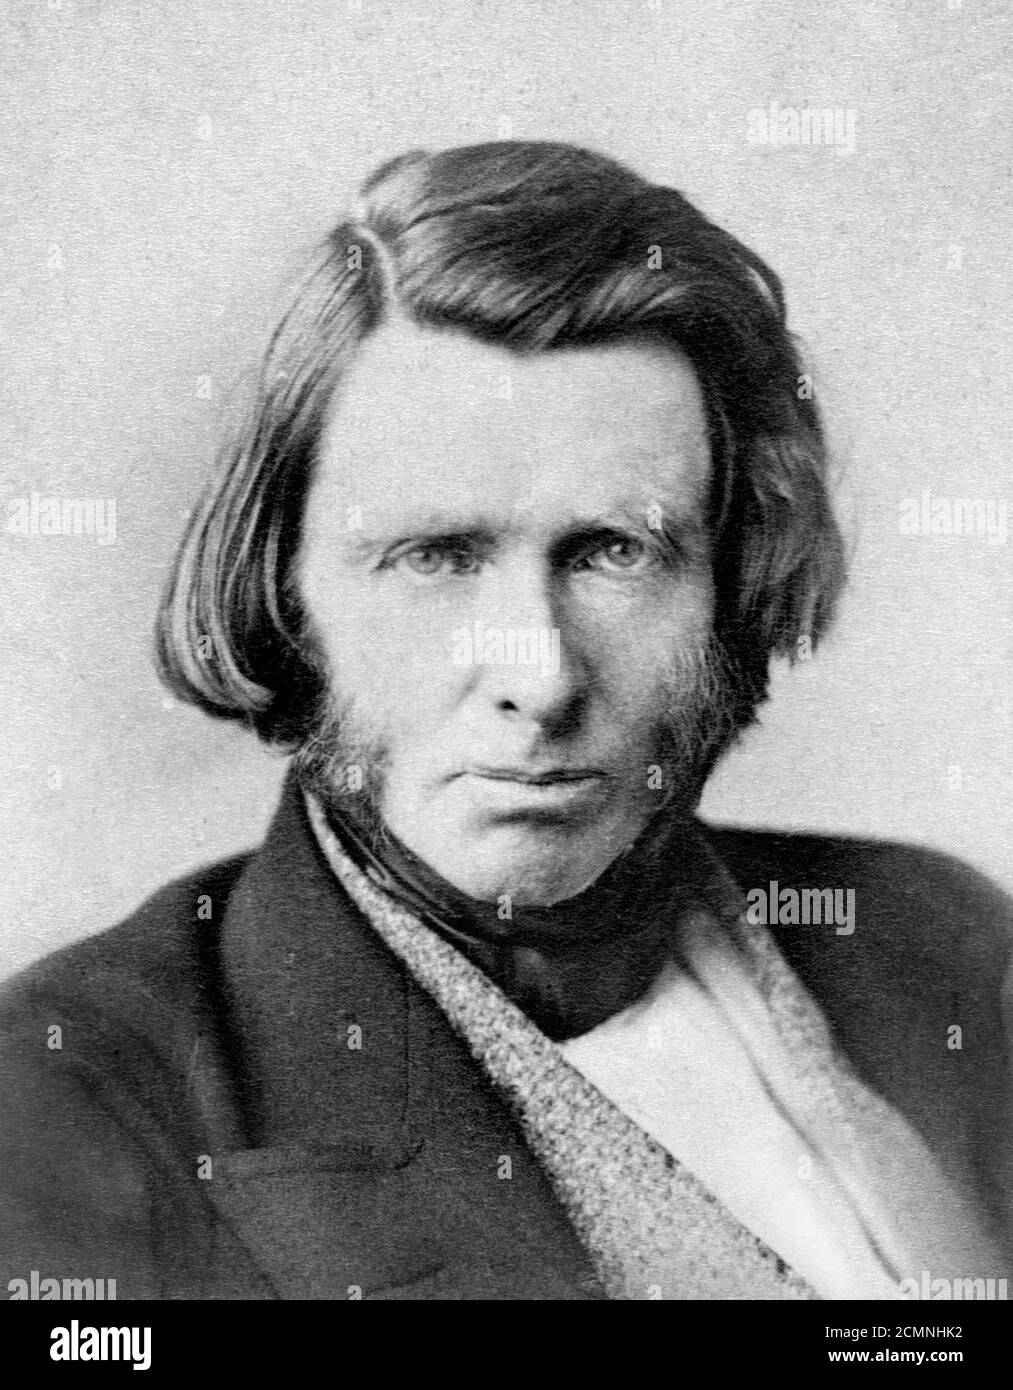 John Ruskin. Porträt des renommierten viktorianischen Kunstkritikers John Ruskin (1819-1900), ca. 1863-70 Stockfoto